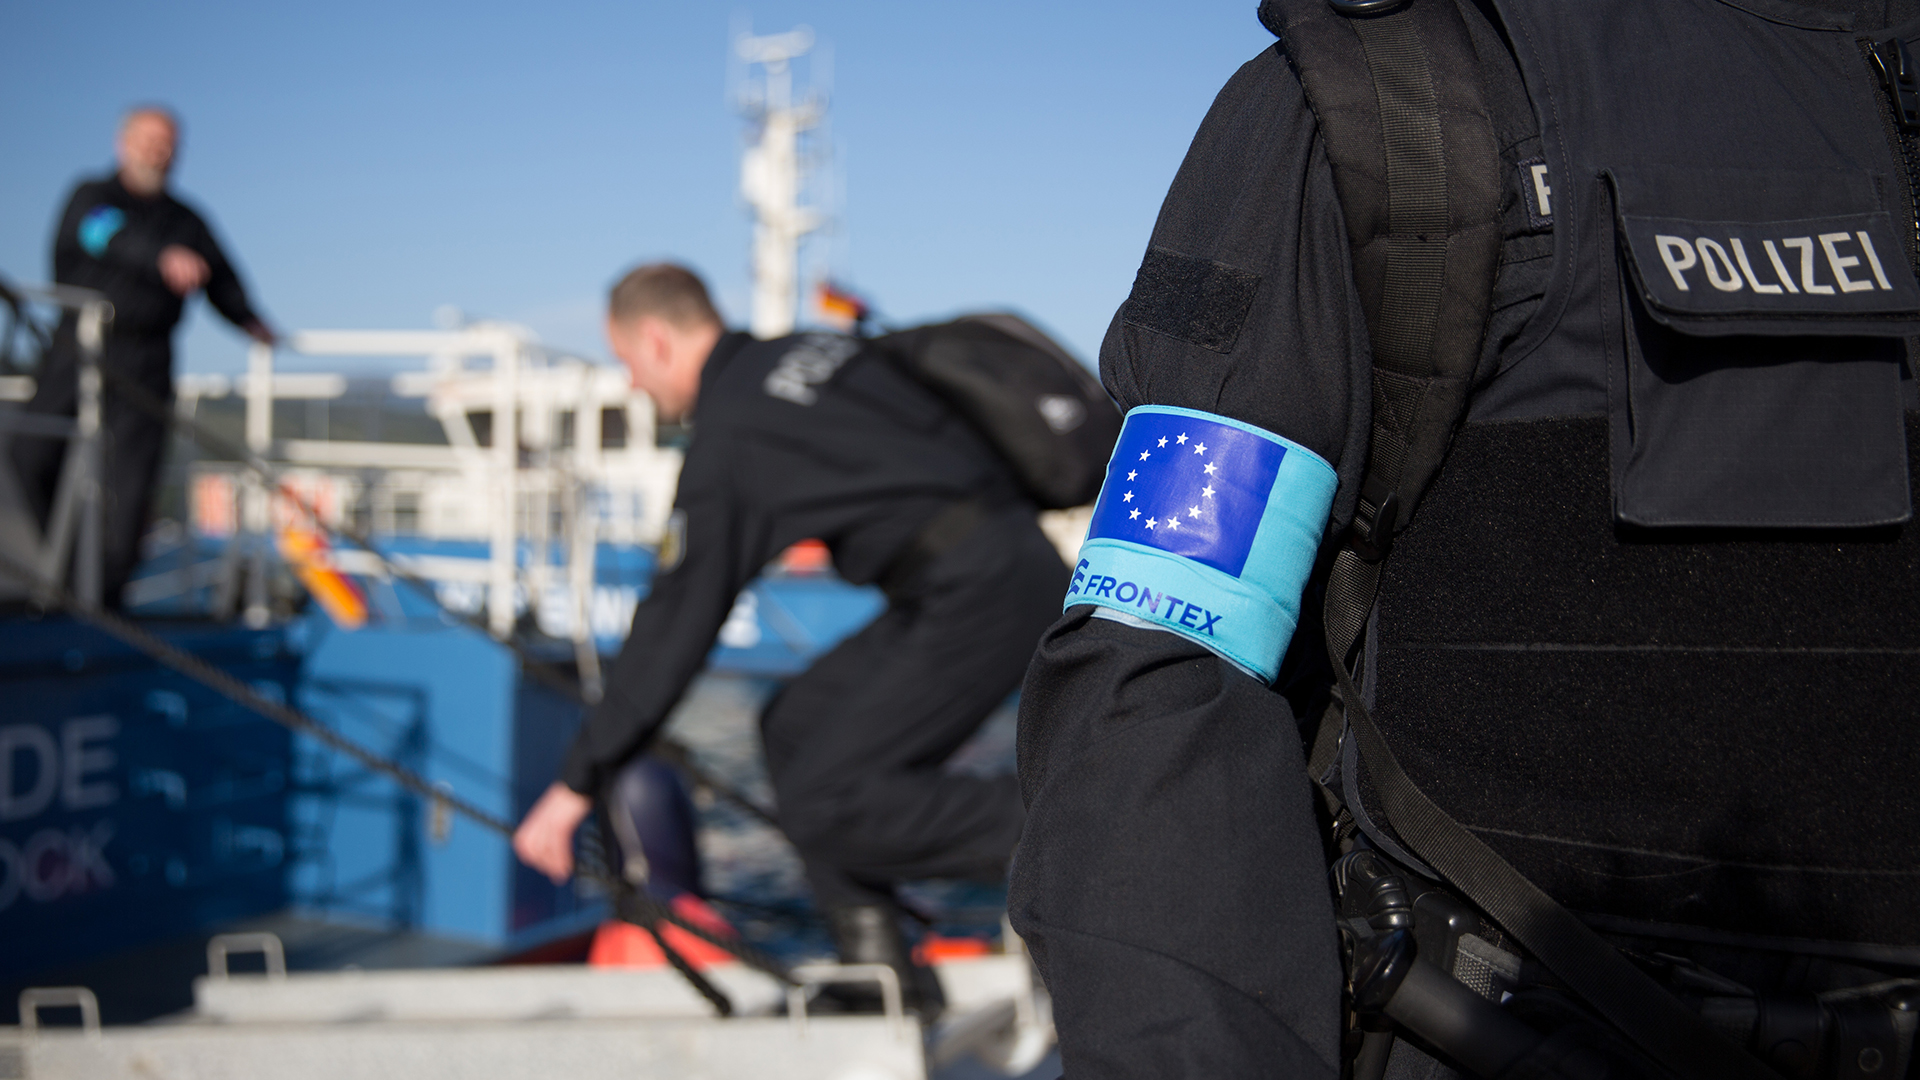 Frontex-Einsatz in der Ägäis (Archiv) | picture alliance / dpa